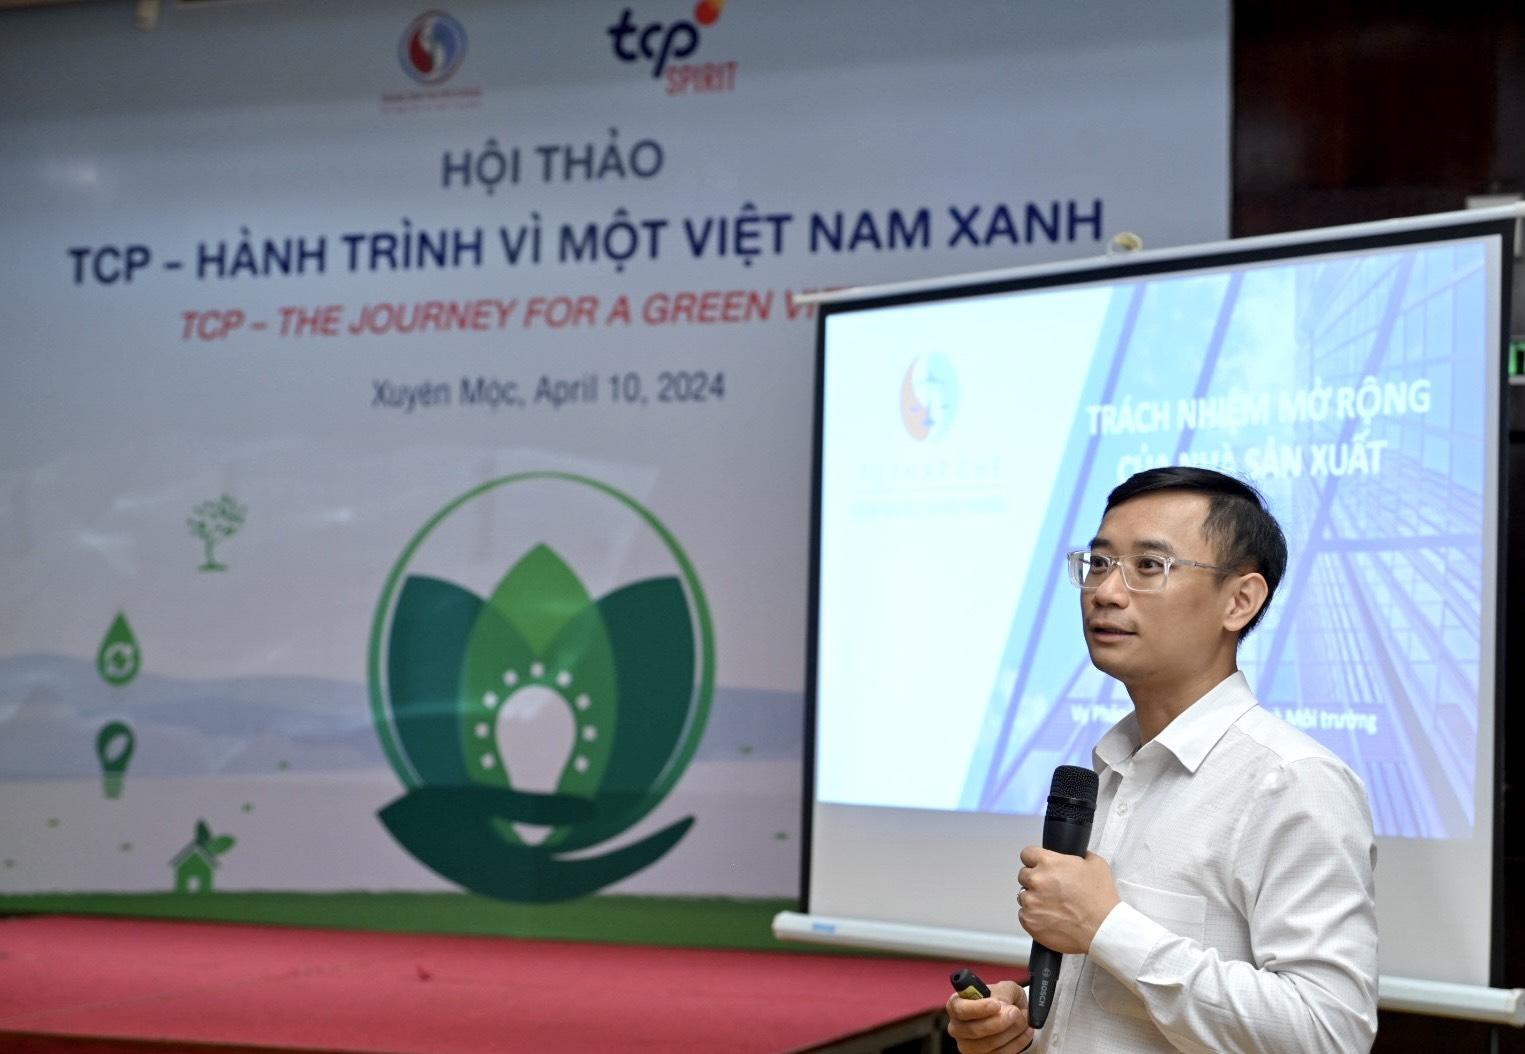 2.700 cây lim được trồng tại tỉnh Bà Rịa Vũng Tàu cho Việt Nam thêm xanh- Ảnh 2.